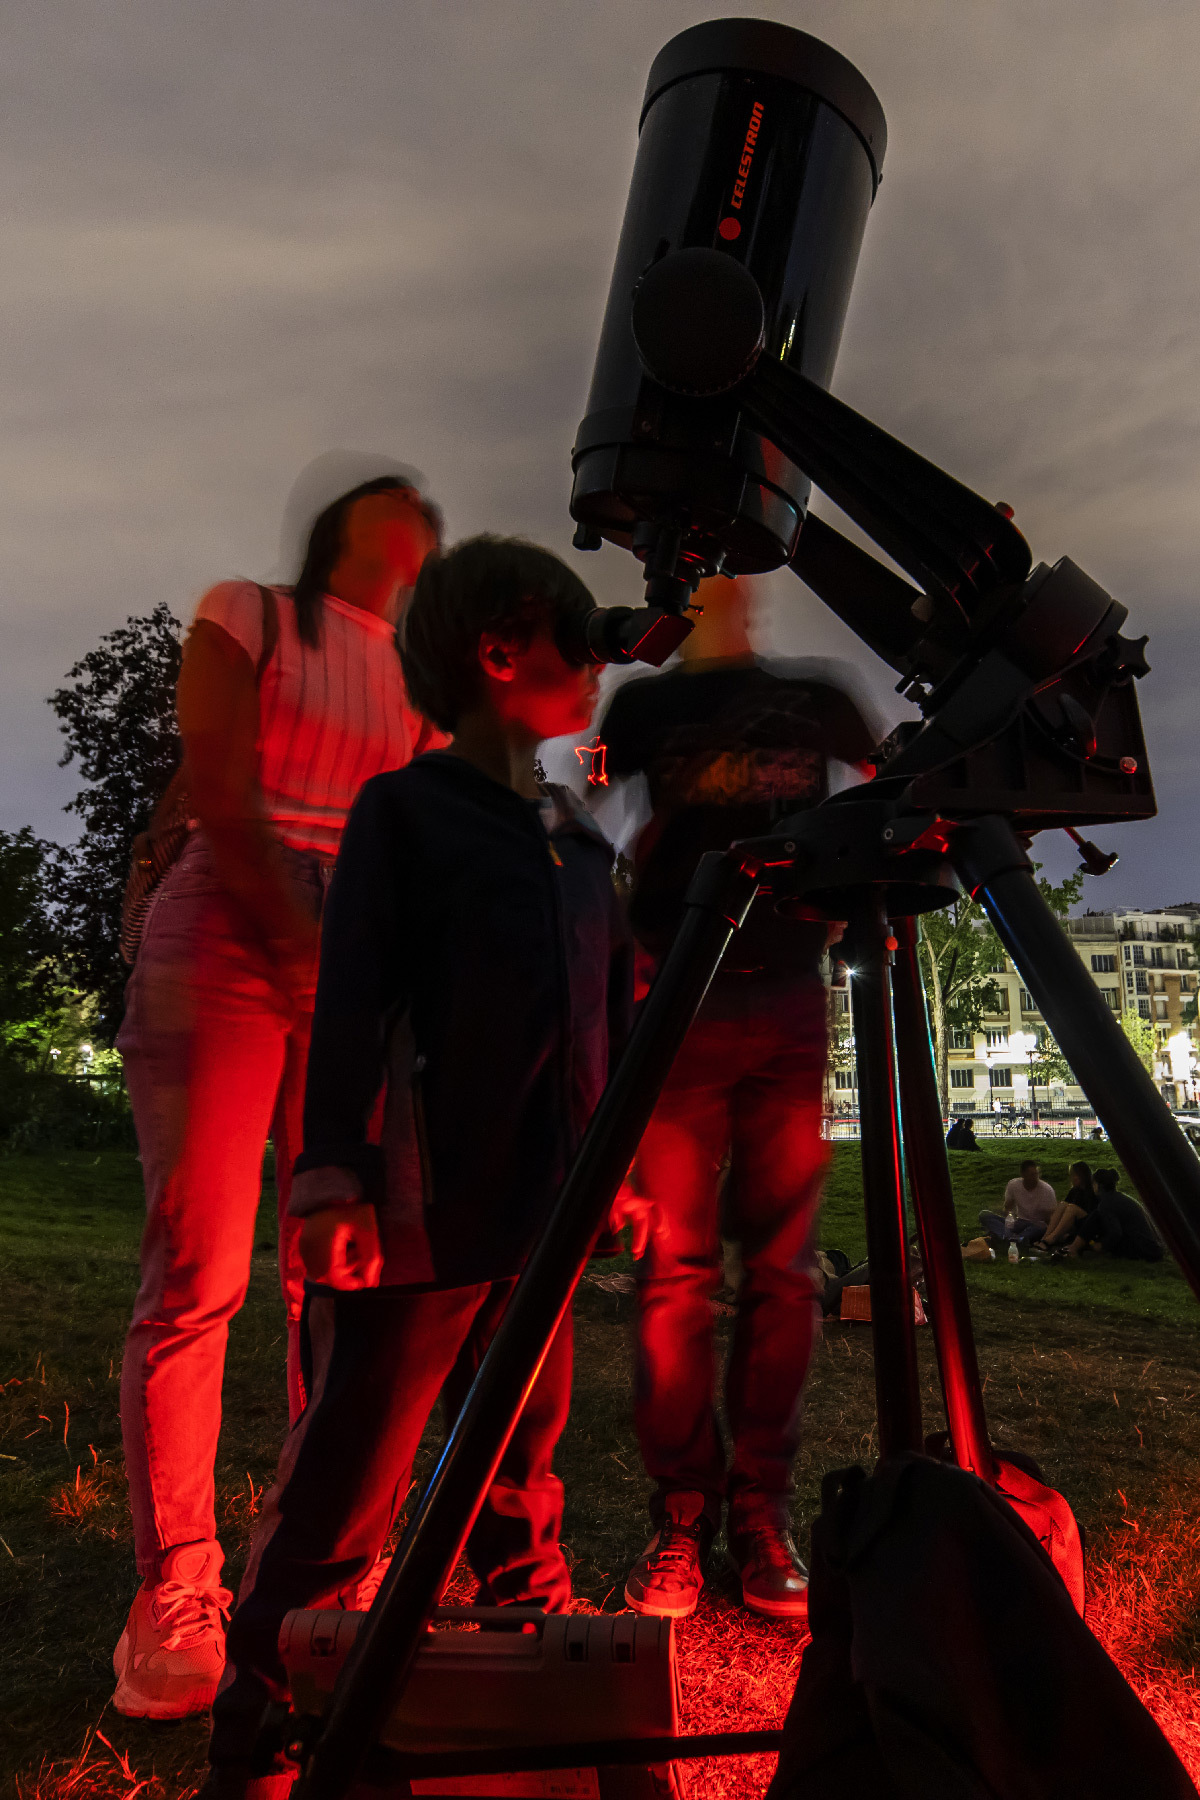 Observateurs du ciel et télescope sur un trépied et lumière rouge comme si on était sur la planète Mars